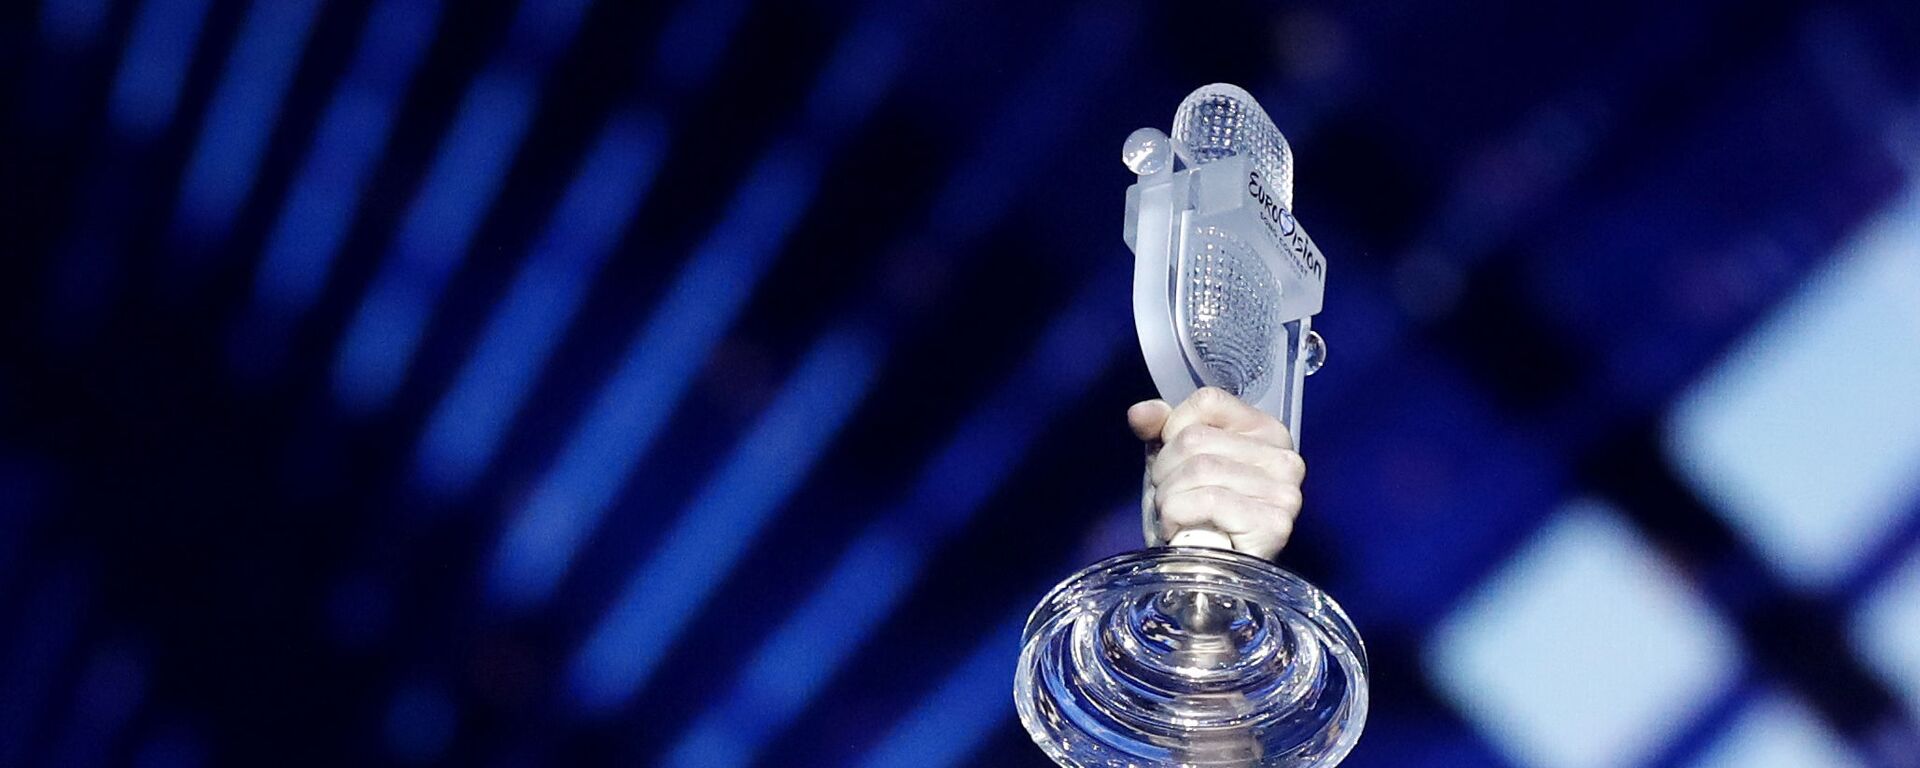 Микрофон с конкурса Евровидение - Sputnik Таджикистан, 1920, 21.05.2021